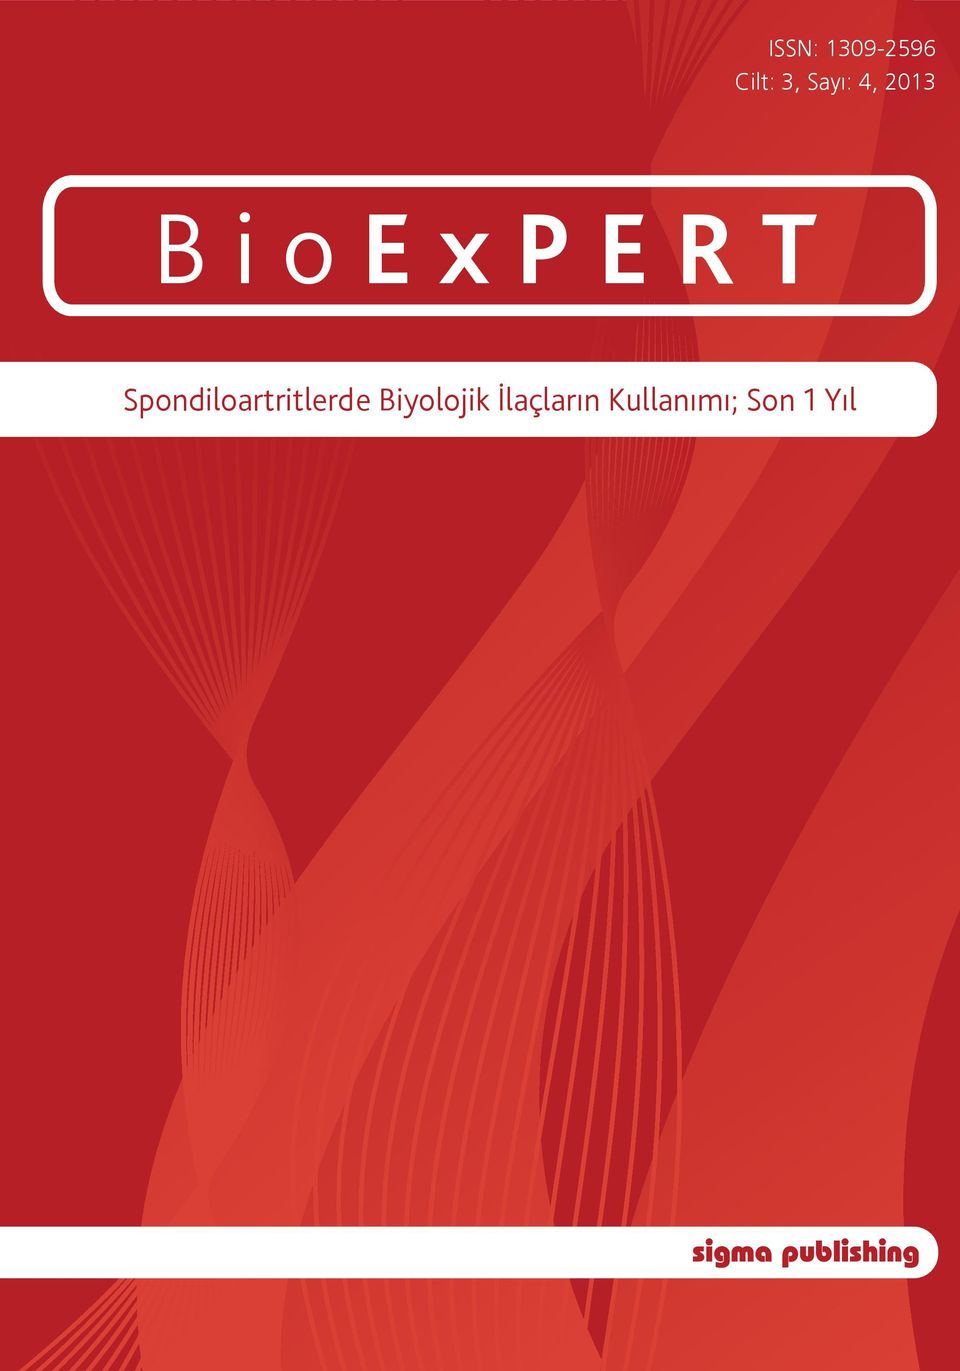 2013 BioExPERT